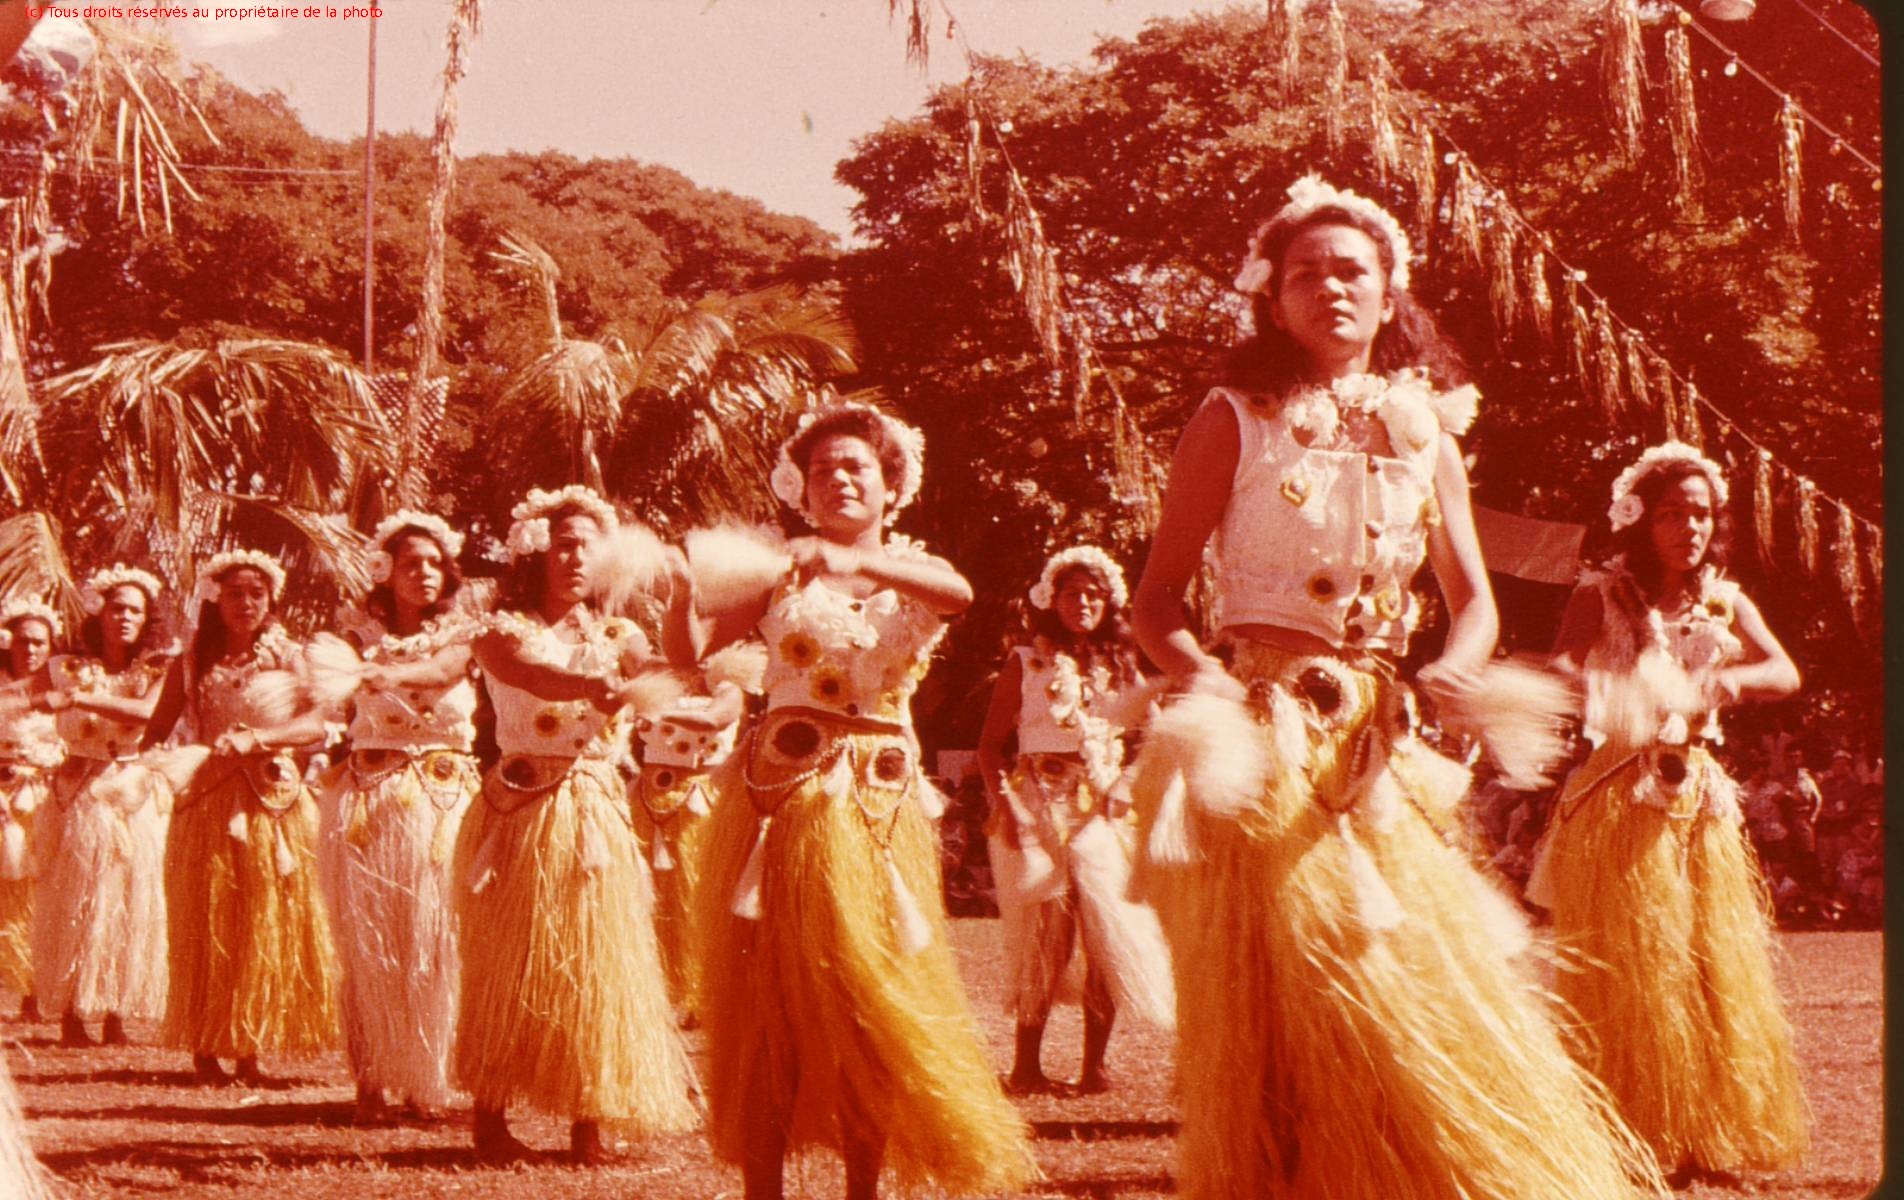 TAHITI 1967-68 (123)